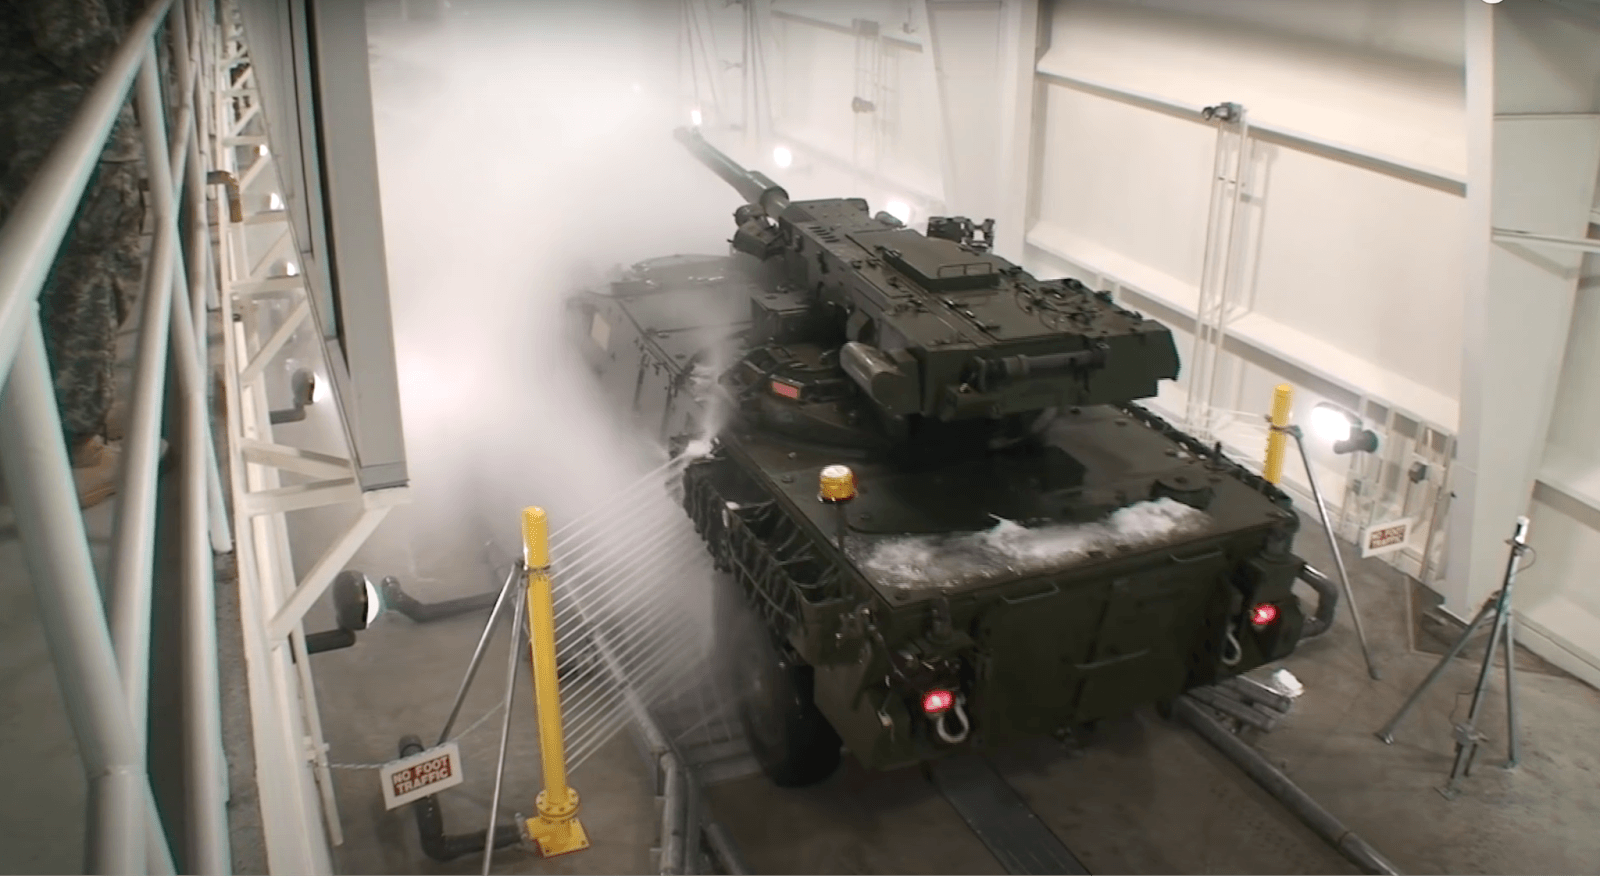 A military tank driving through an InterClean wash system